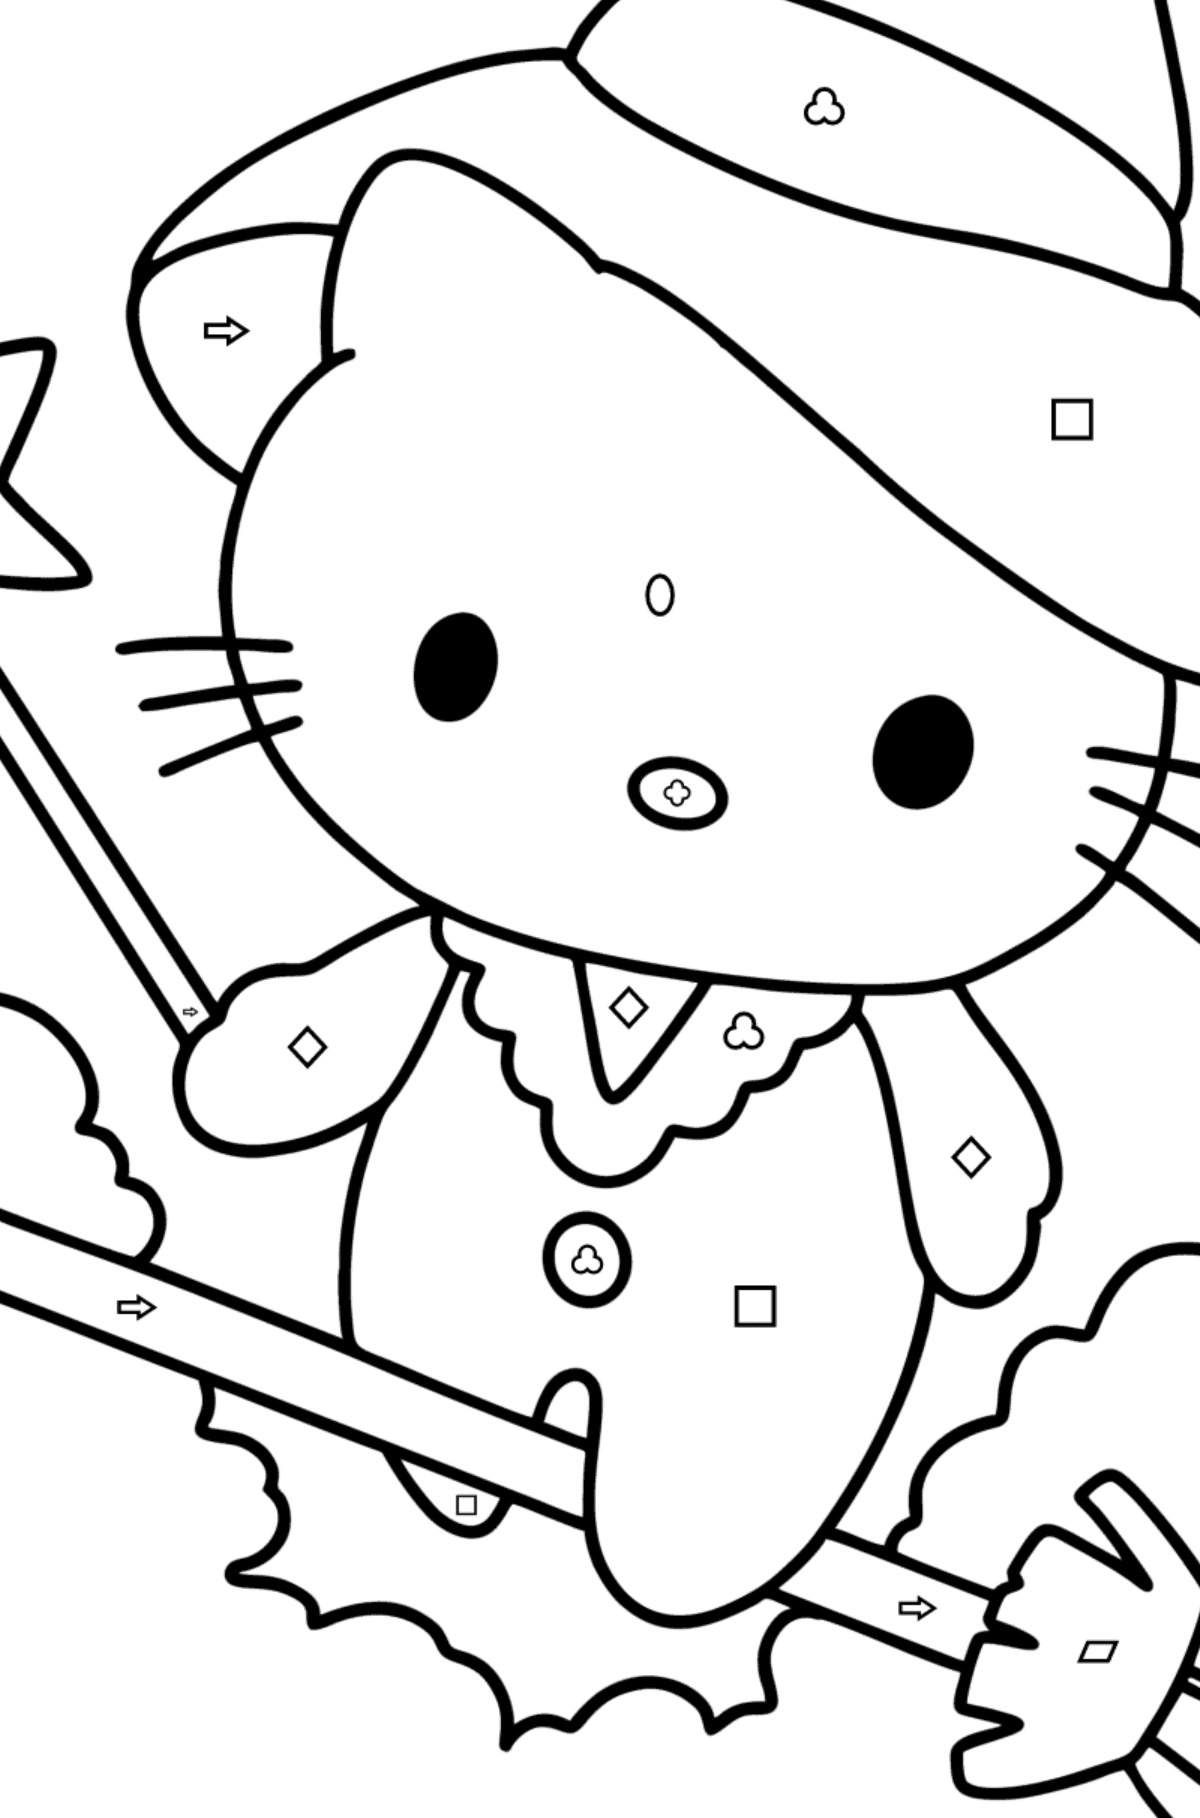 Boyama sayfası Hello Kitty cadılar bayramı - Geometrik Şekillerle Boyama çocuklar için